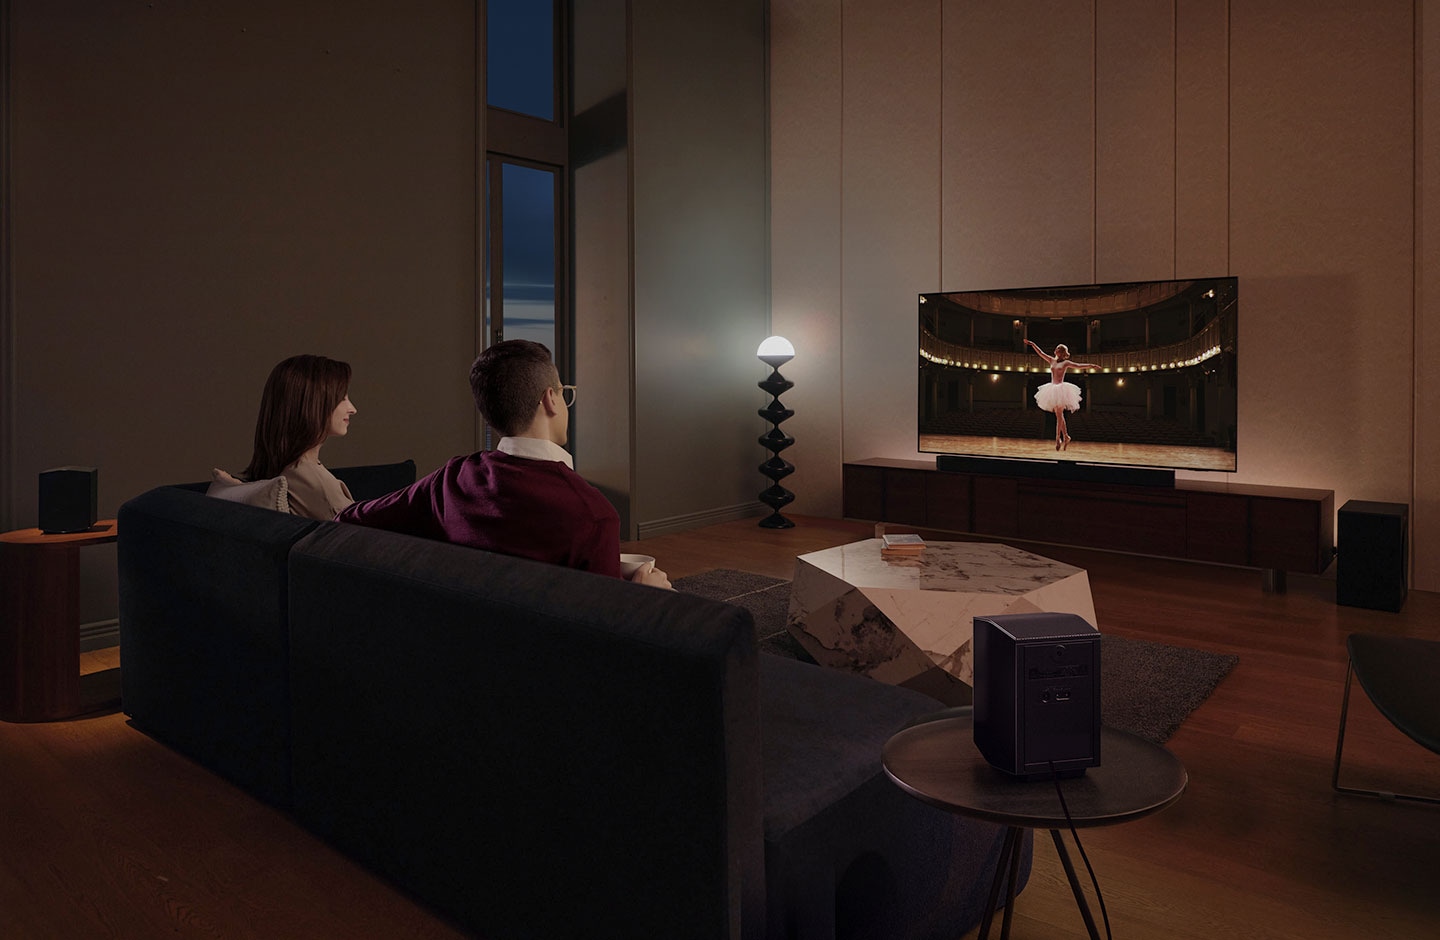 זוג נהנה מצפייה בסרט בסלון שלהם עם סראונד כמו בקולנוע עם מקרן הקול של Samsung.